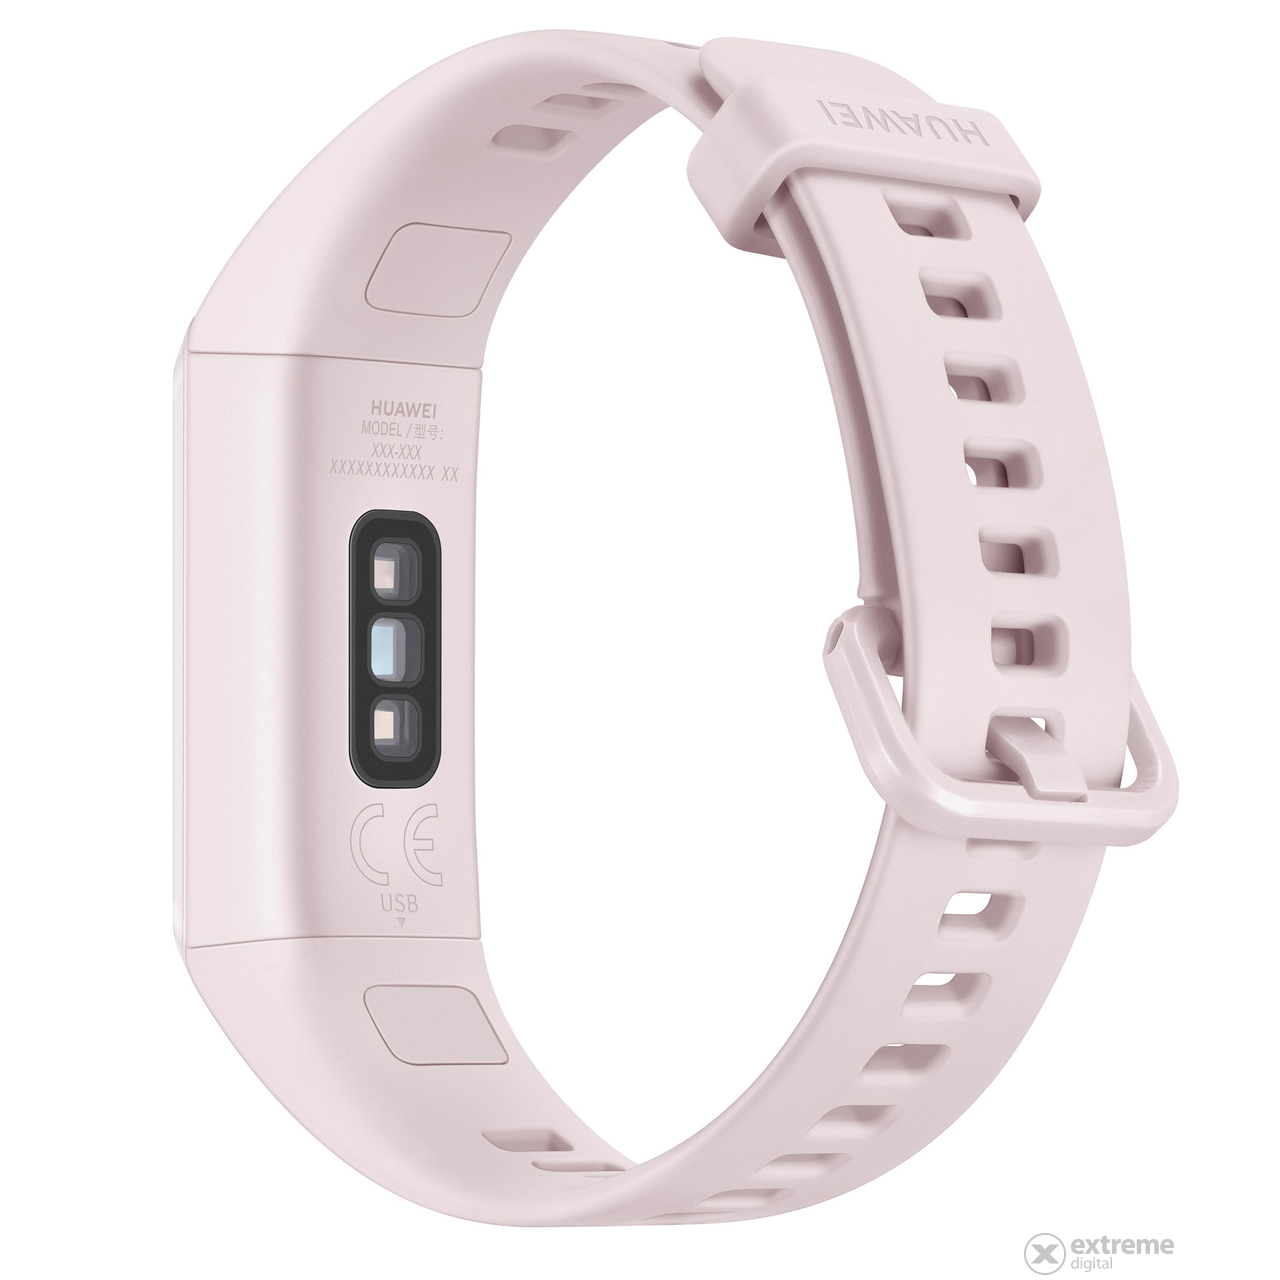 Huawei Band 4 Aktivitäts-Tracker, Sakura pink